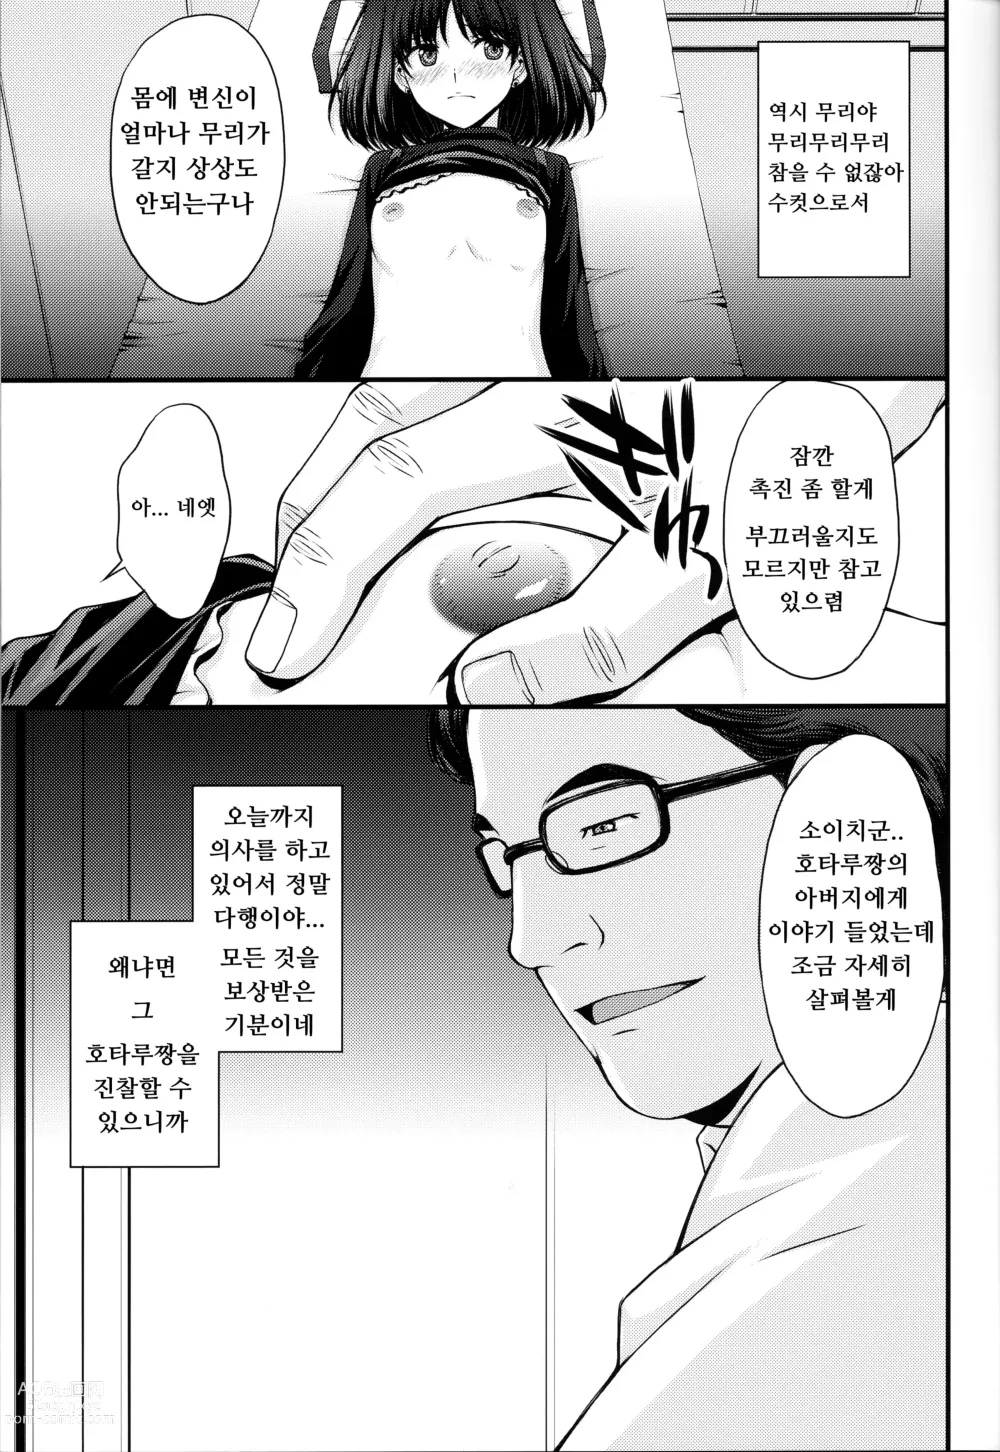 Page 5 of doujinshi 호타루의 의사선생님 놀이